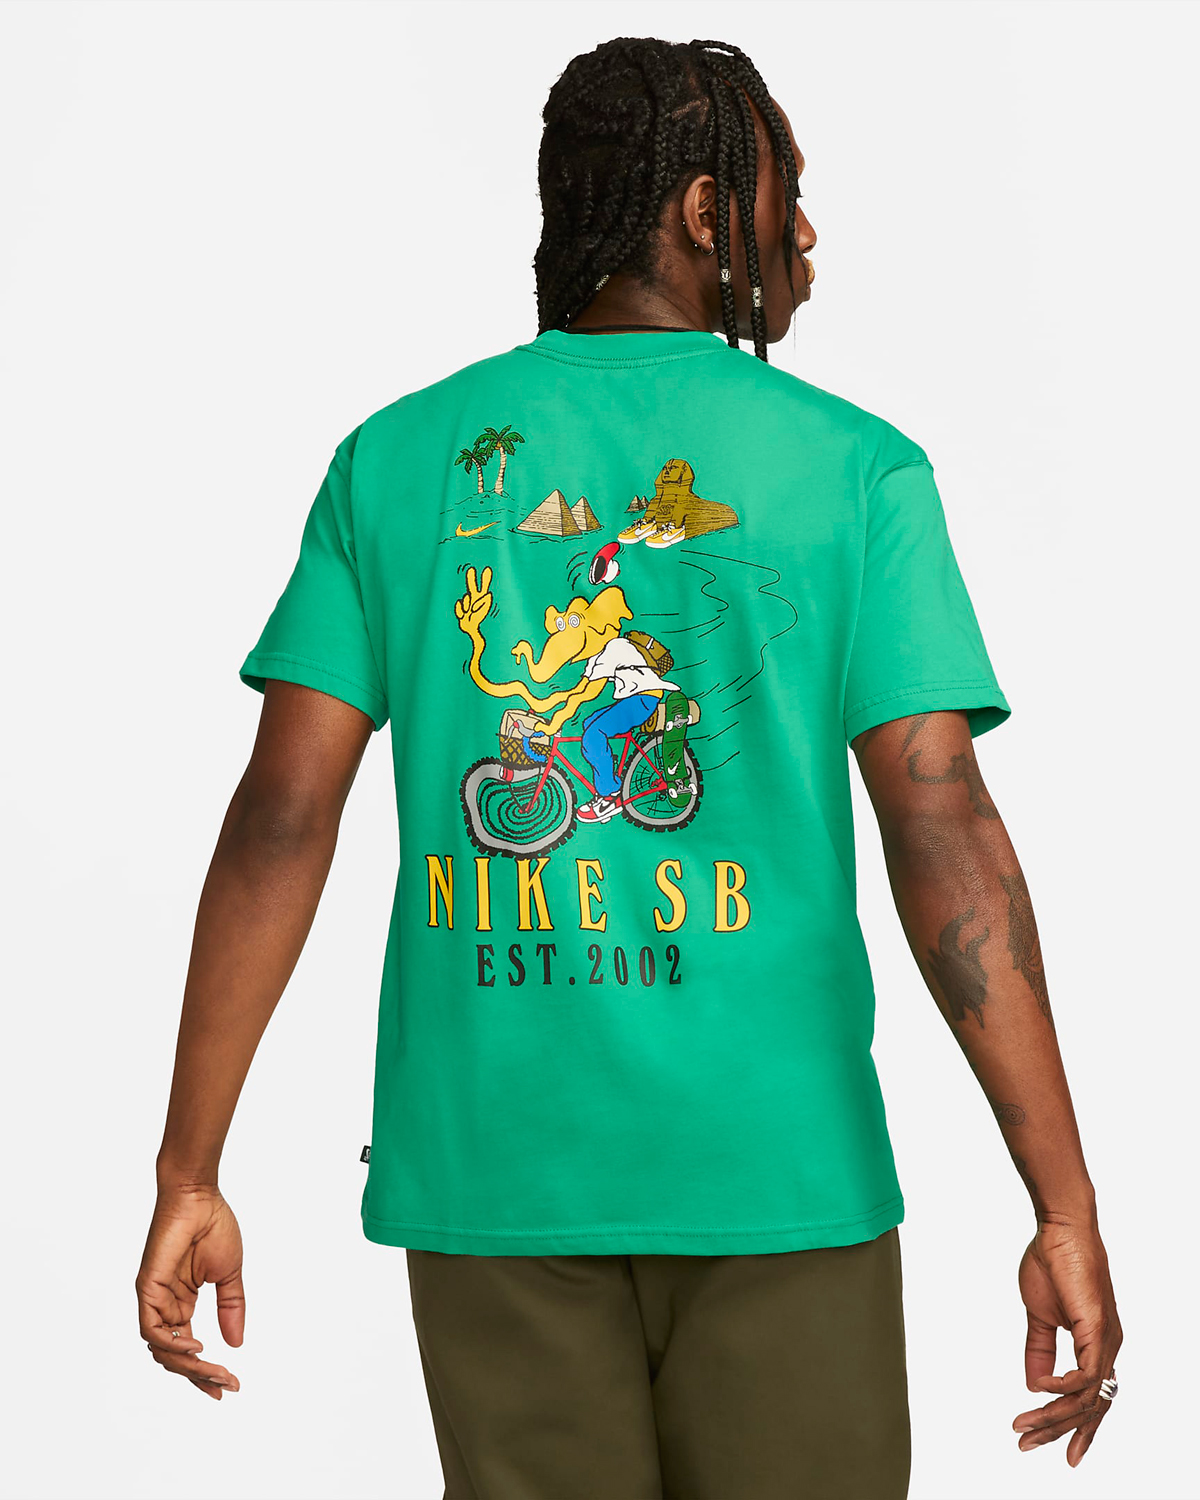 Nike SB T Shirt Stadium Green 2